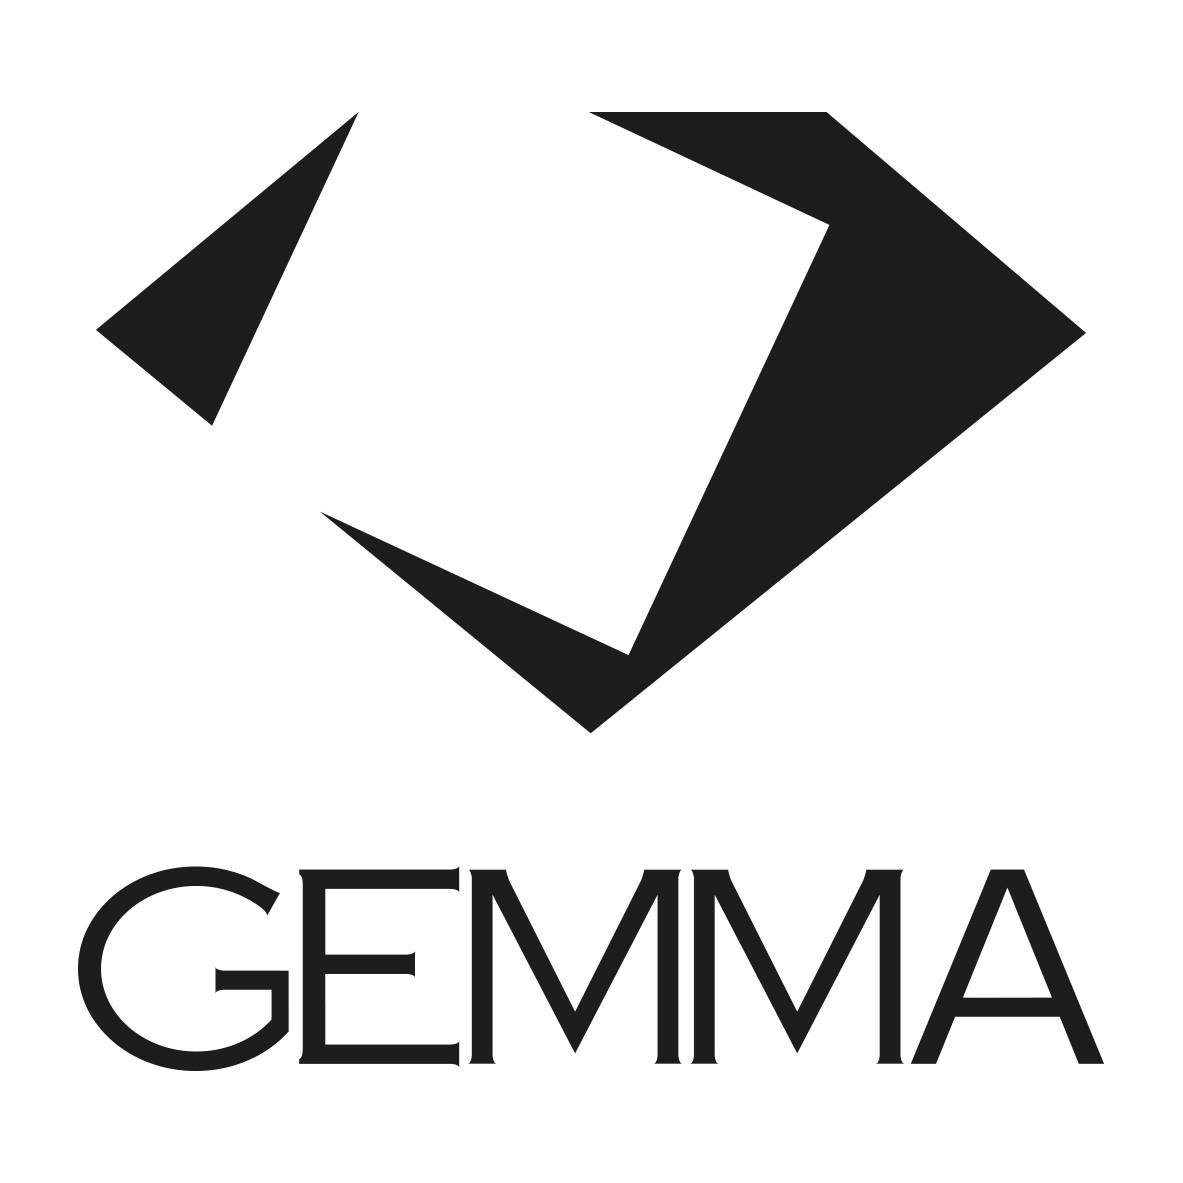 Gemma Ceramics